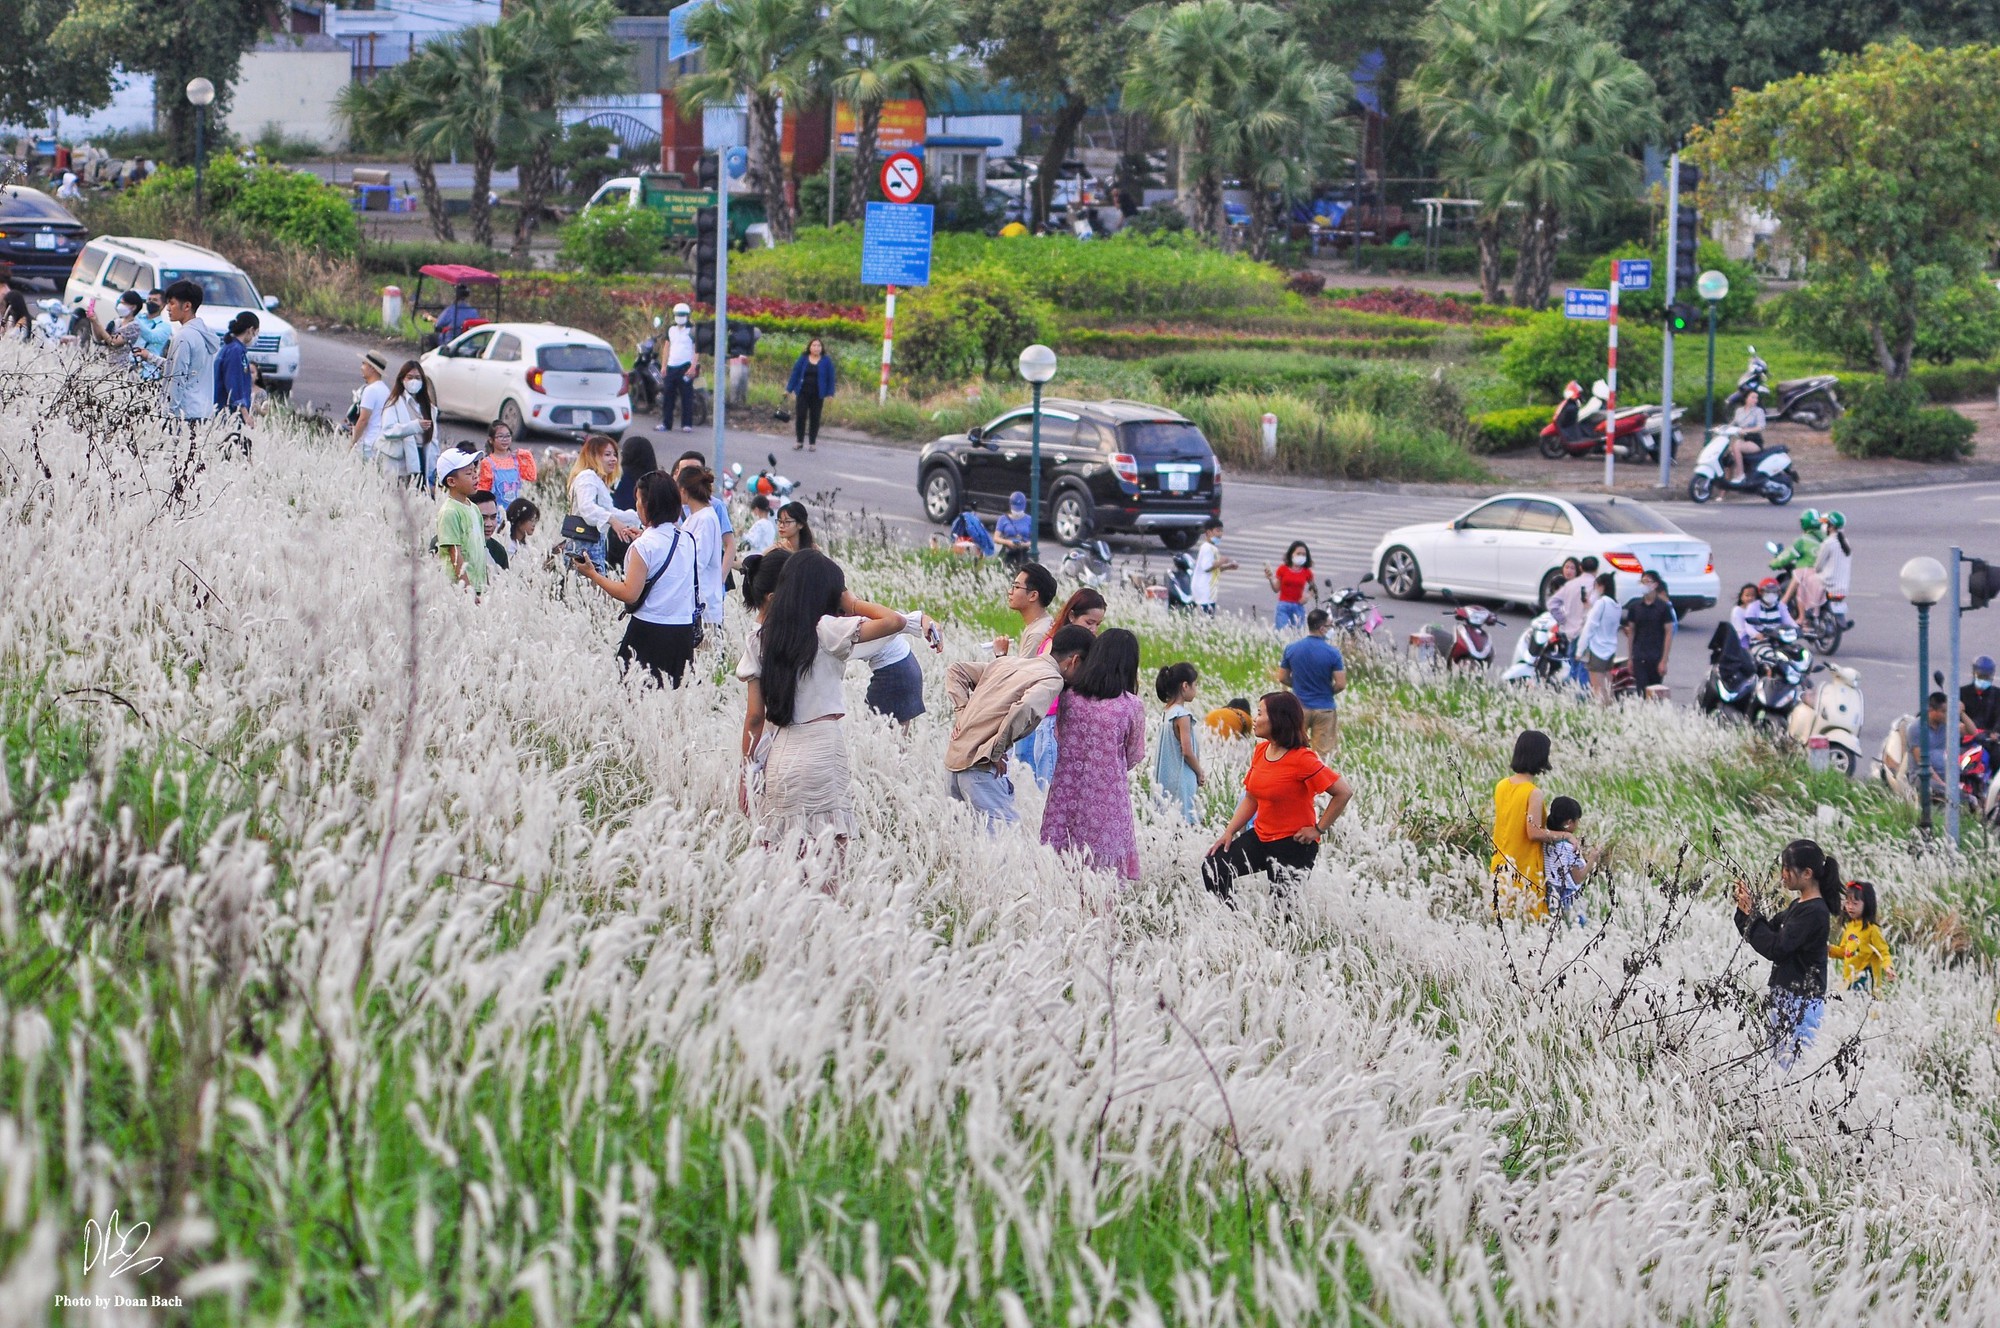 Ra đê Long Biên chụp ảnh giữa trắng ngàn cỏ lau - Ảnh 3.